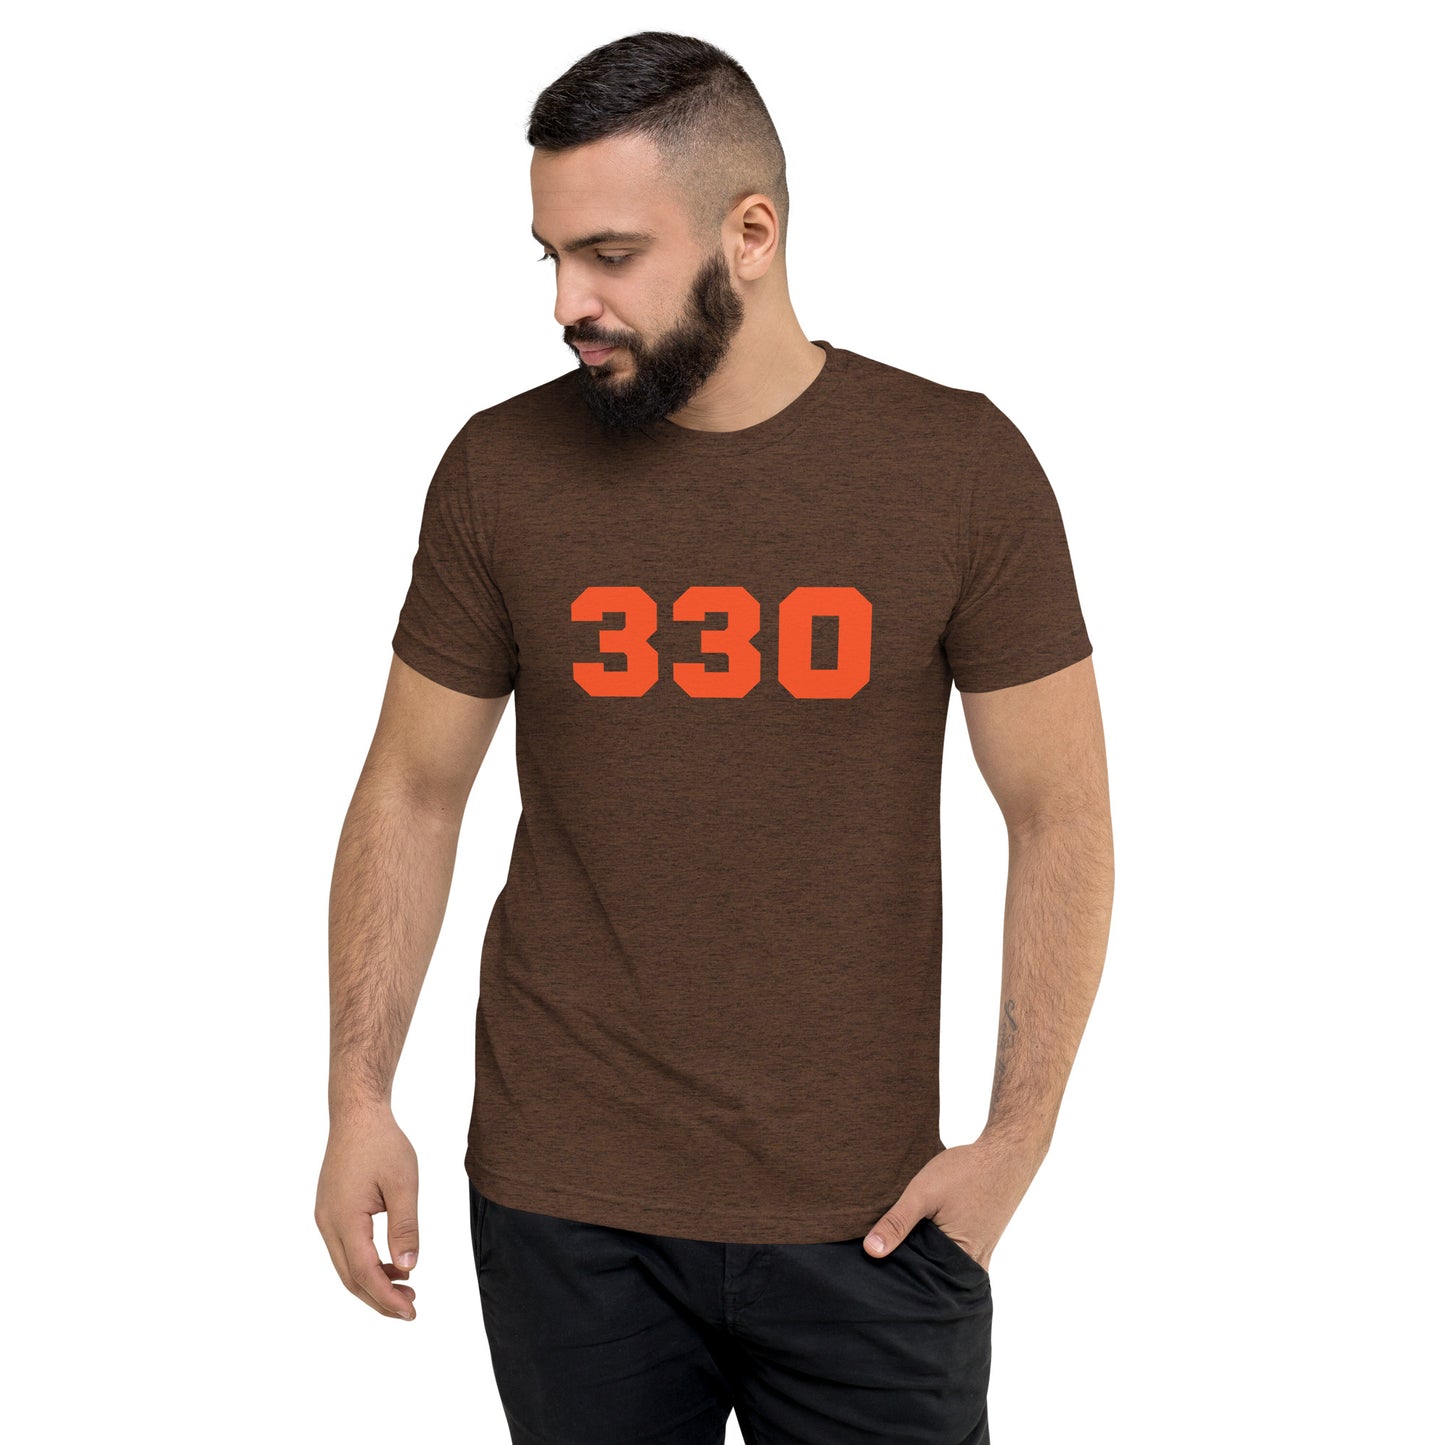 330 Cleveland Short Sleeve Tri-Blend T-Shirt